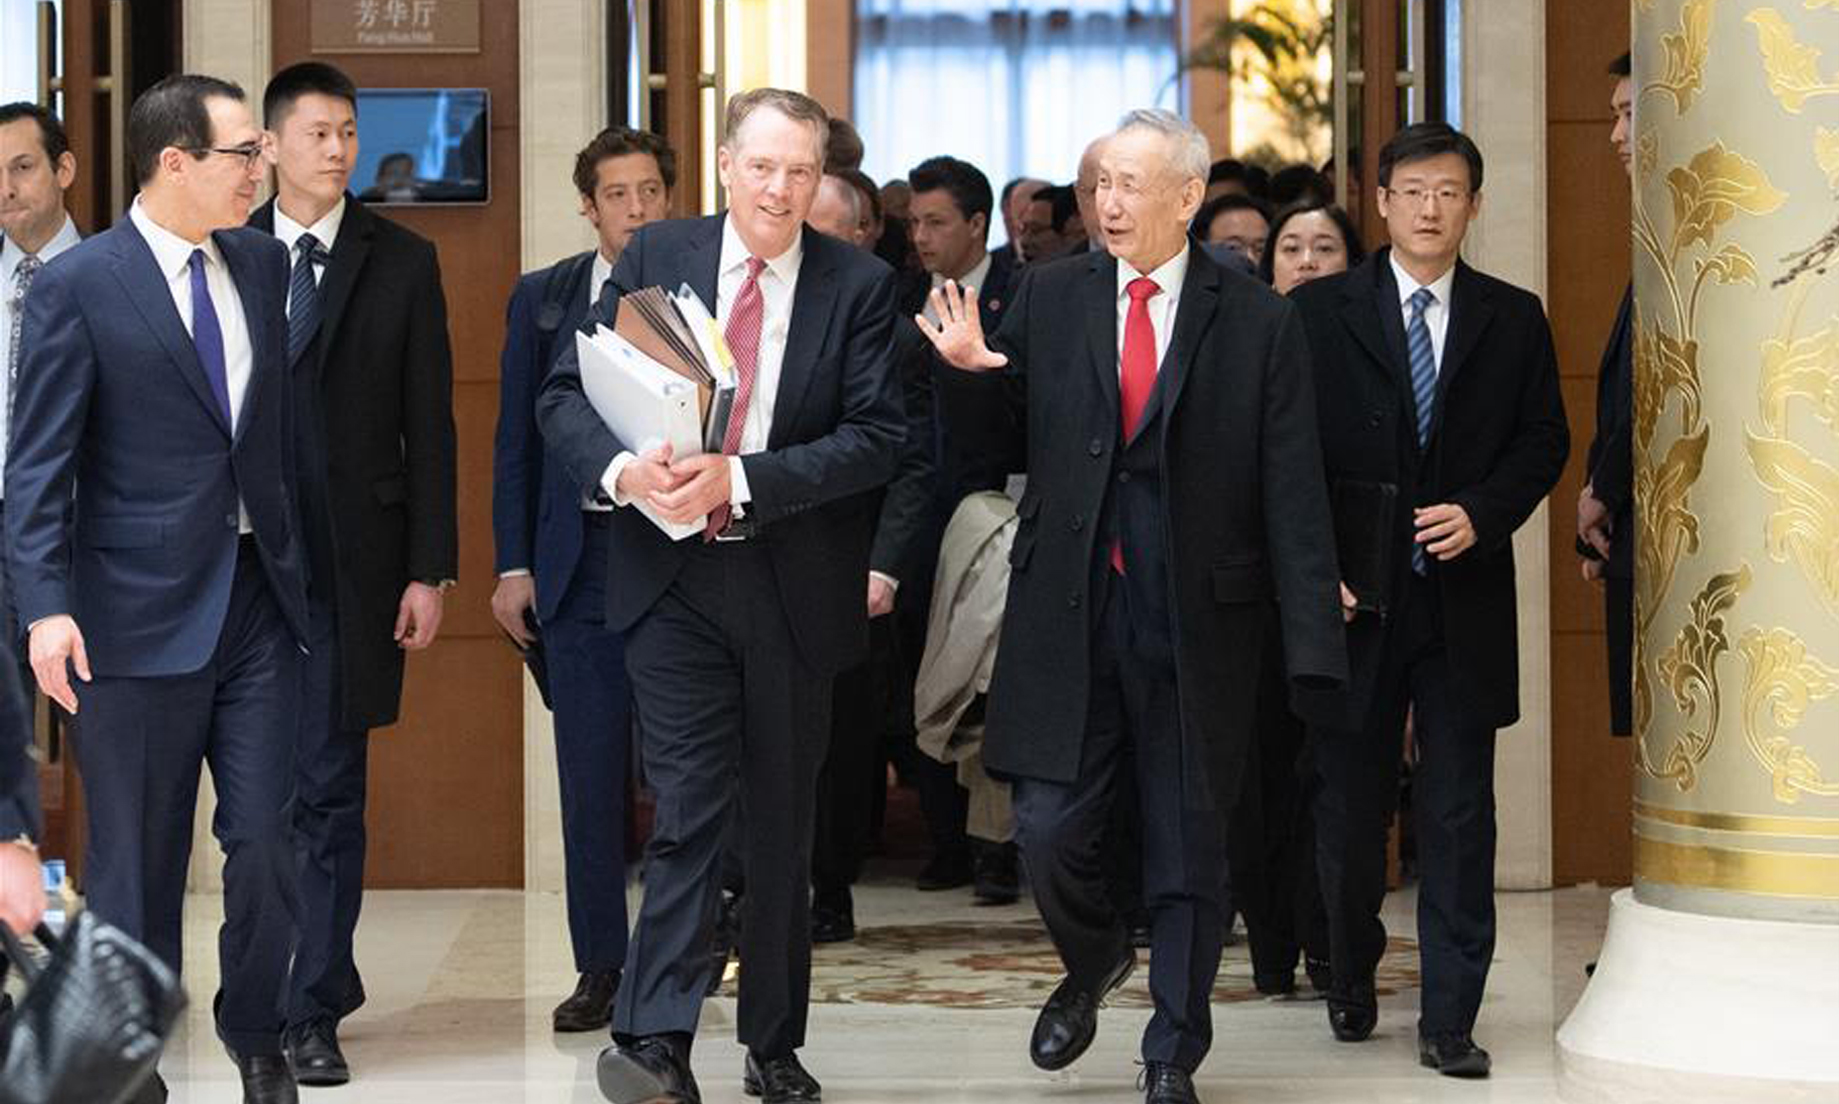 US officials to meet Xi as trade talks near end